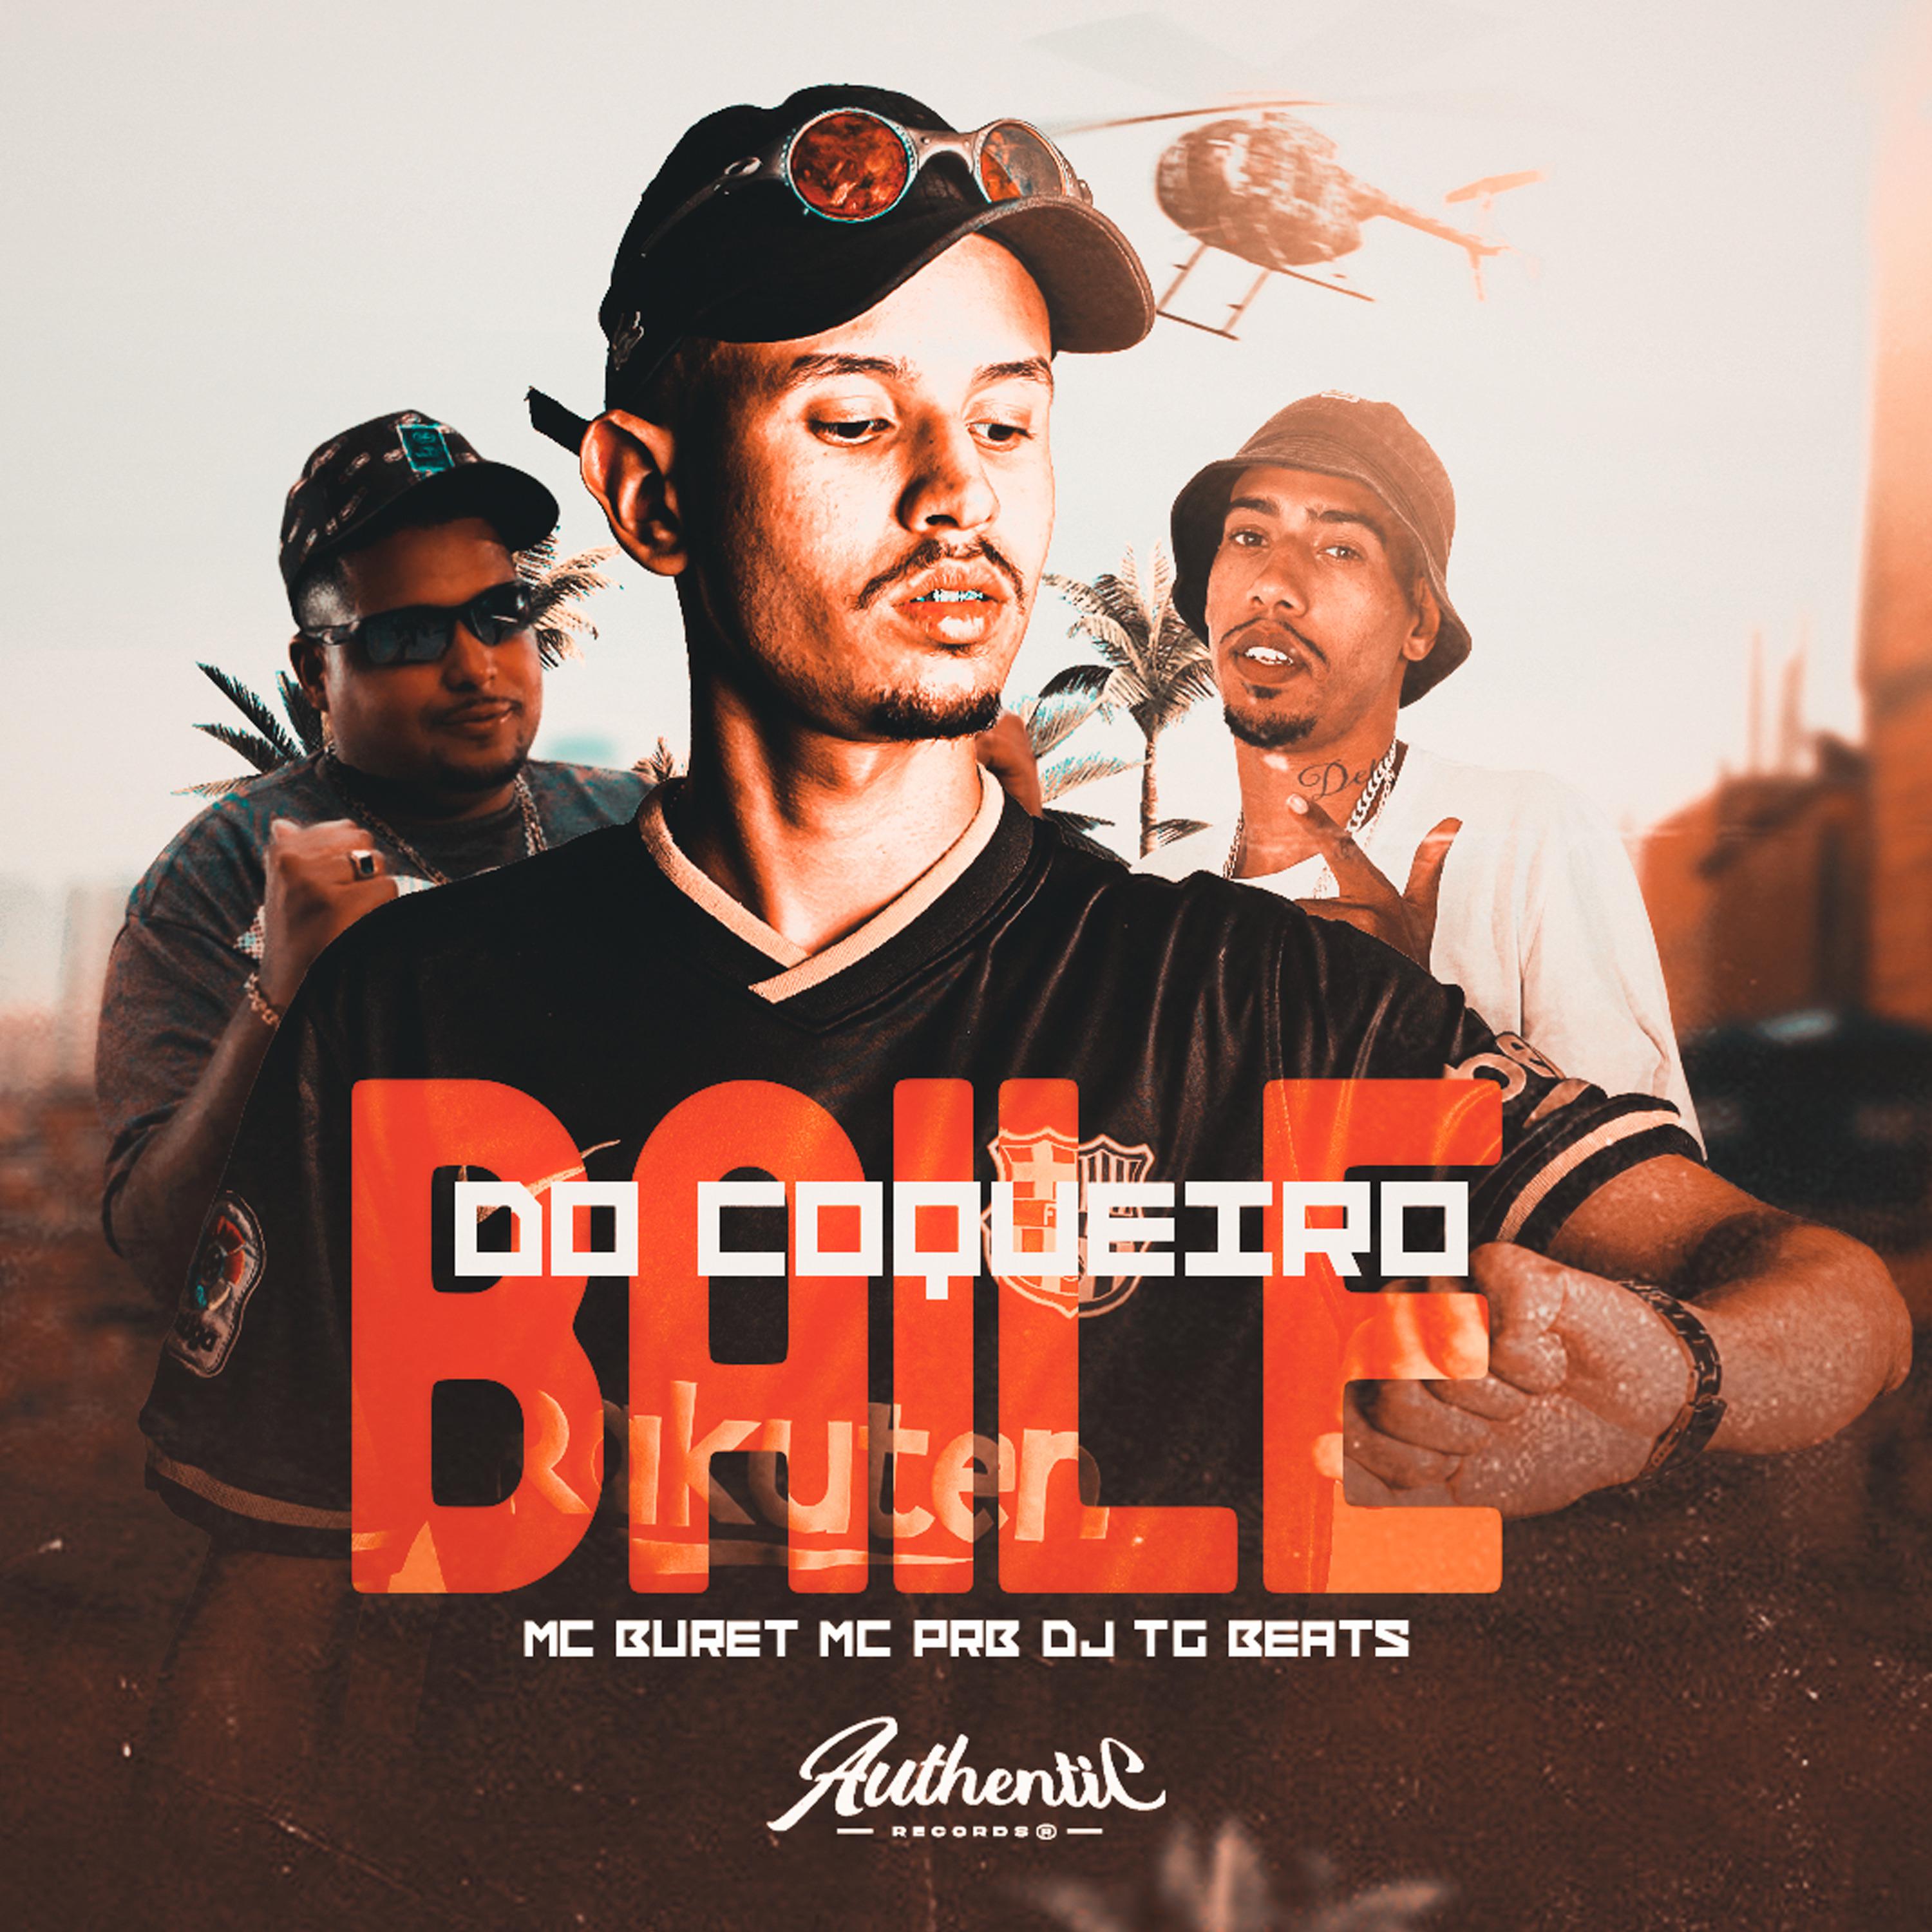 Постер альбома Baile do Coqueiro